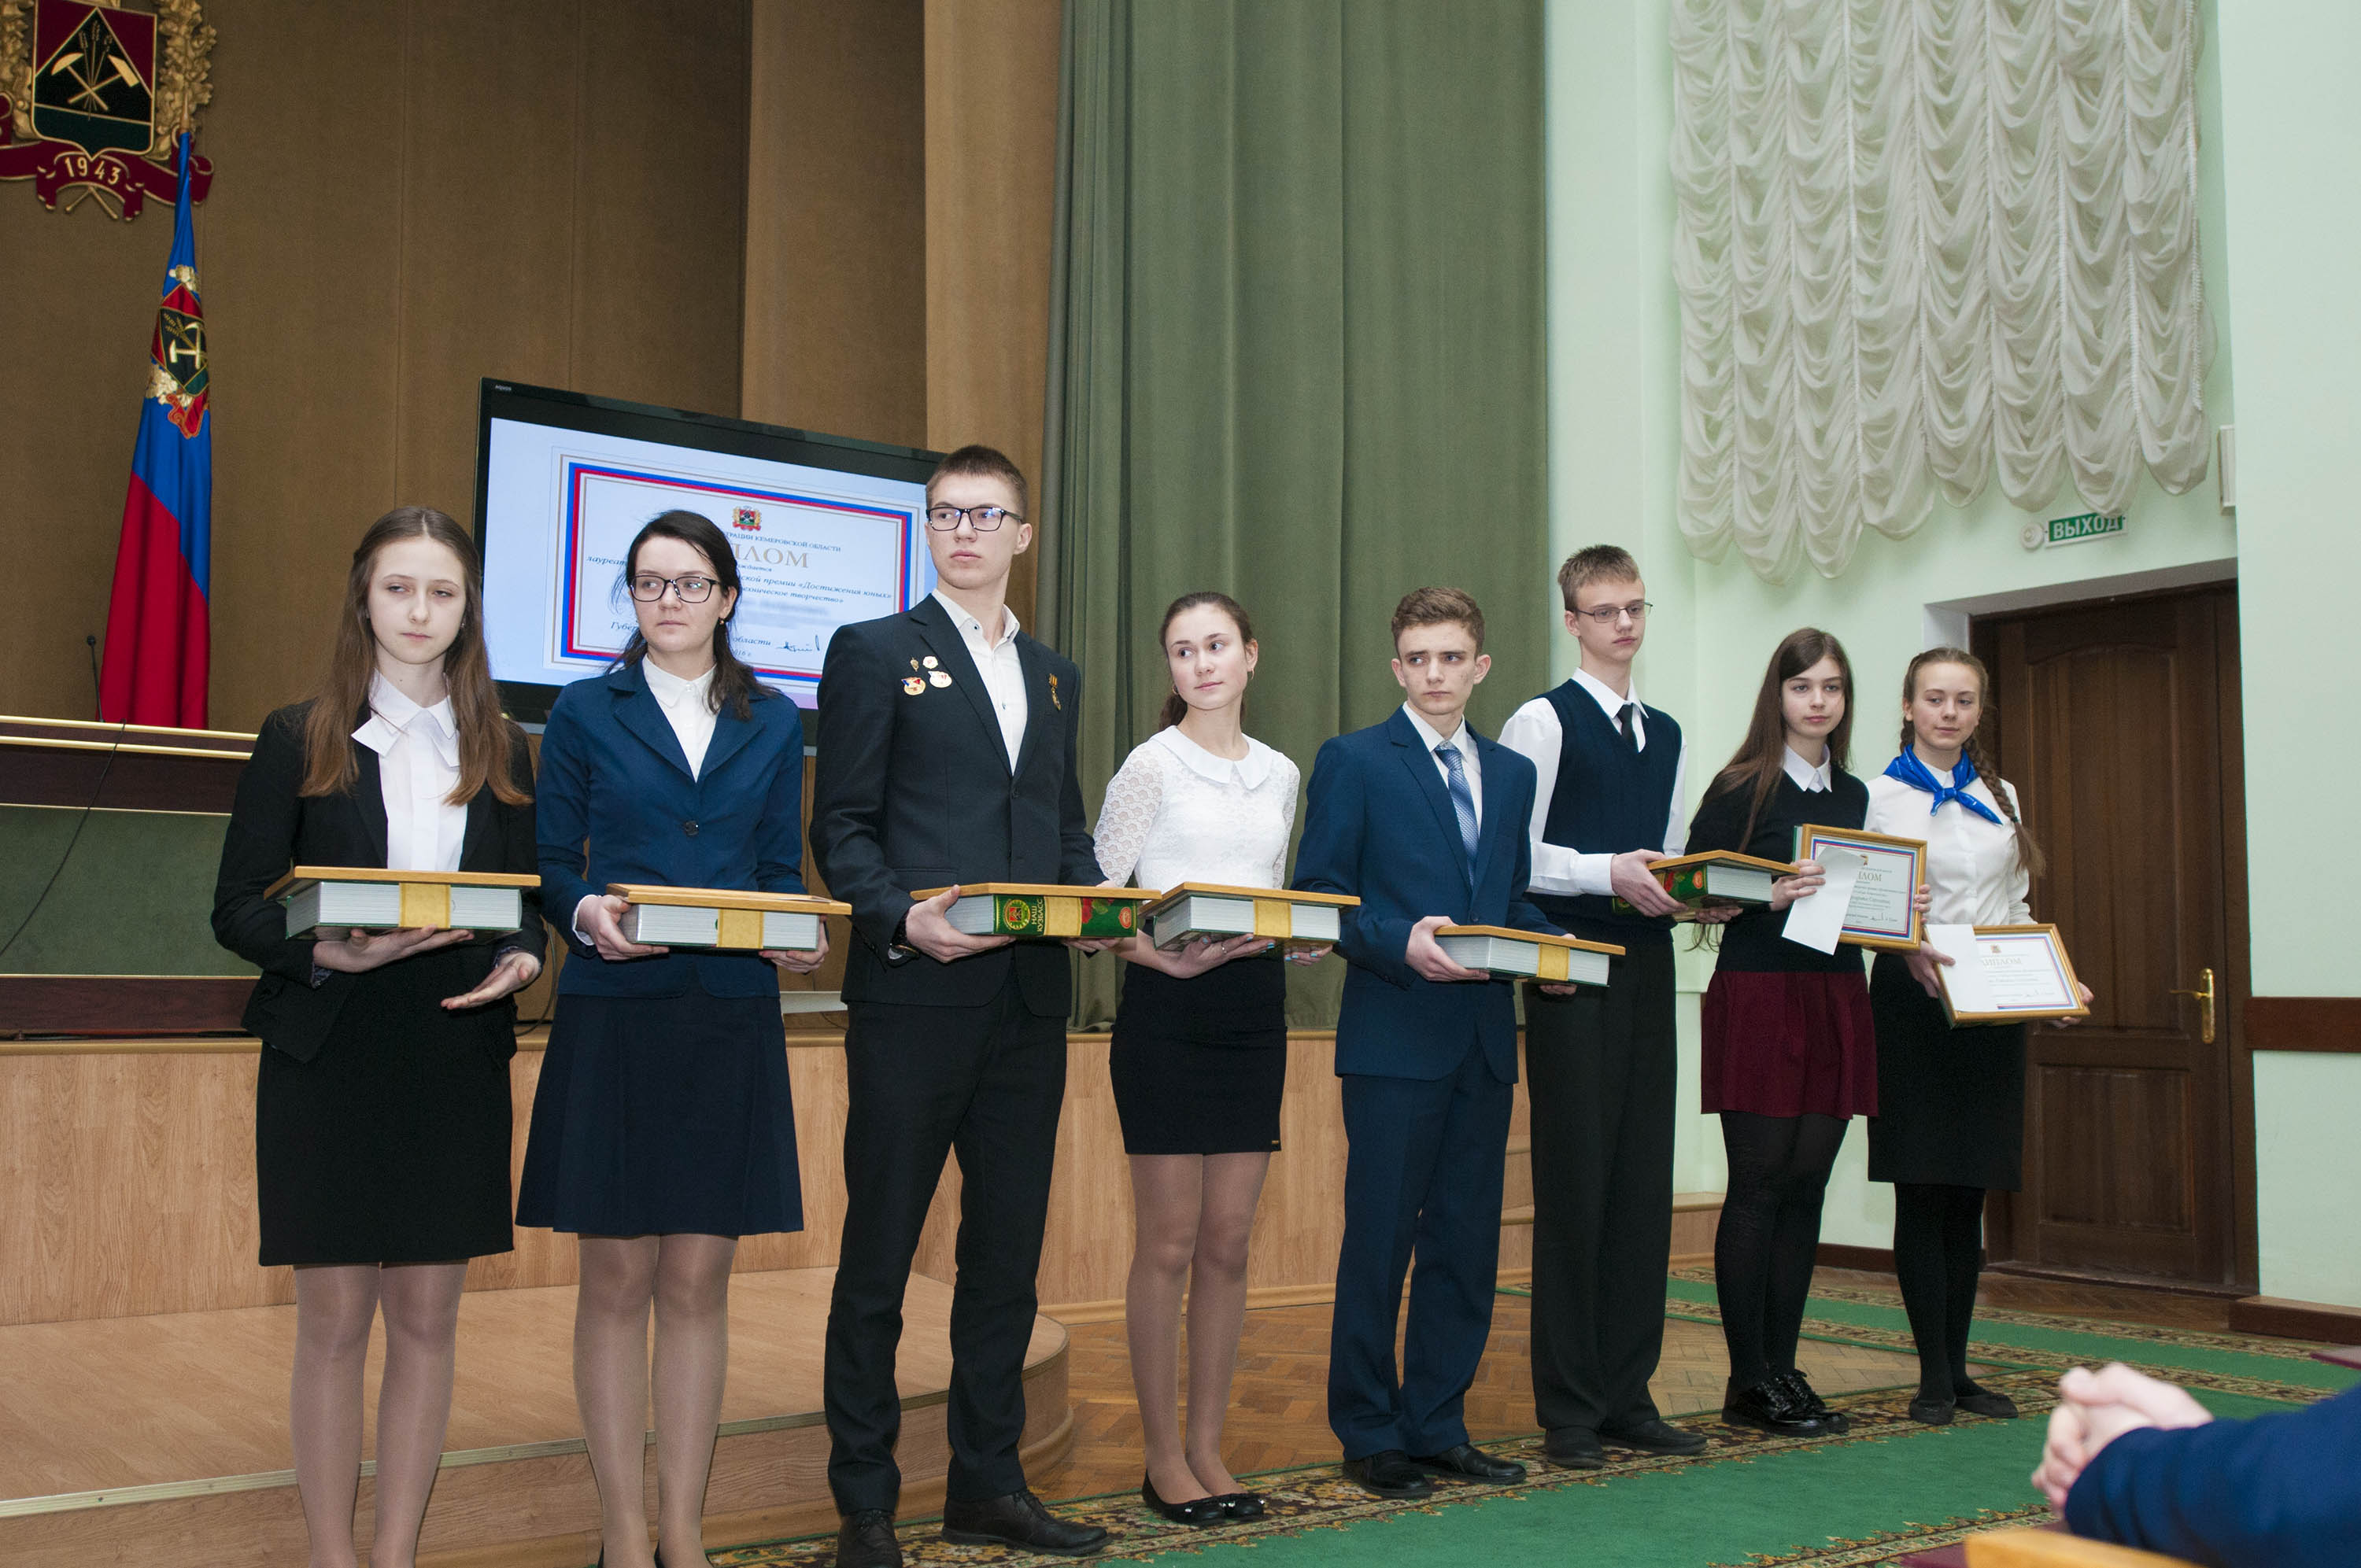 Награждение в Кемерово. Достижение юных 2022 Кемерово. Достижения юных в Кузбассе,награждение. Награждение в Кемерово сегодня.